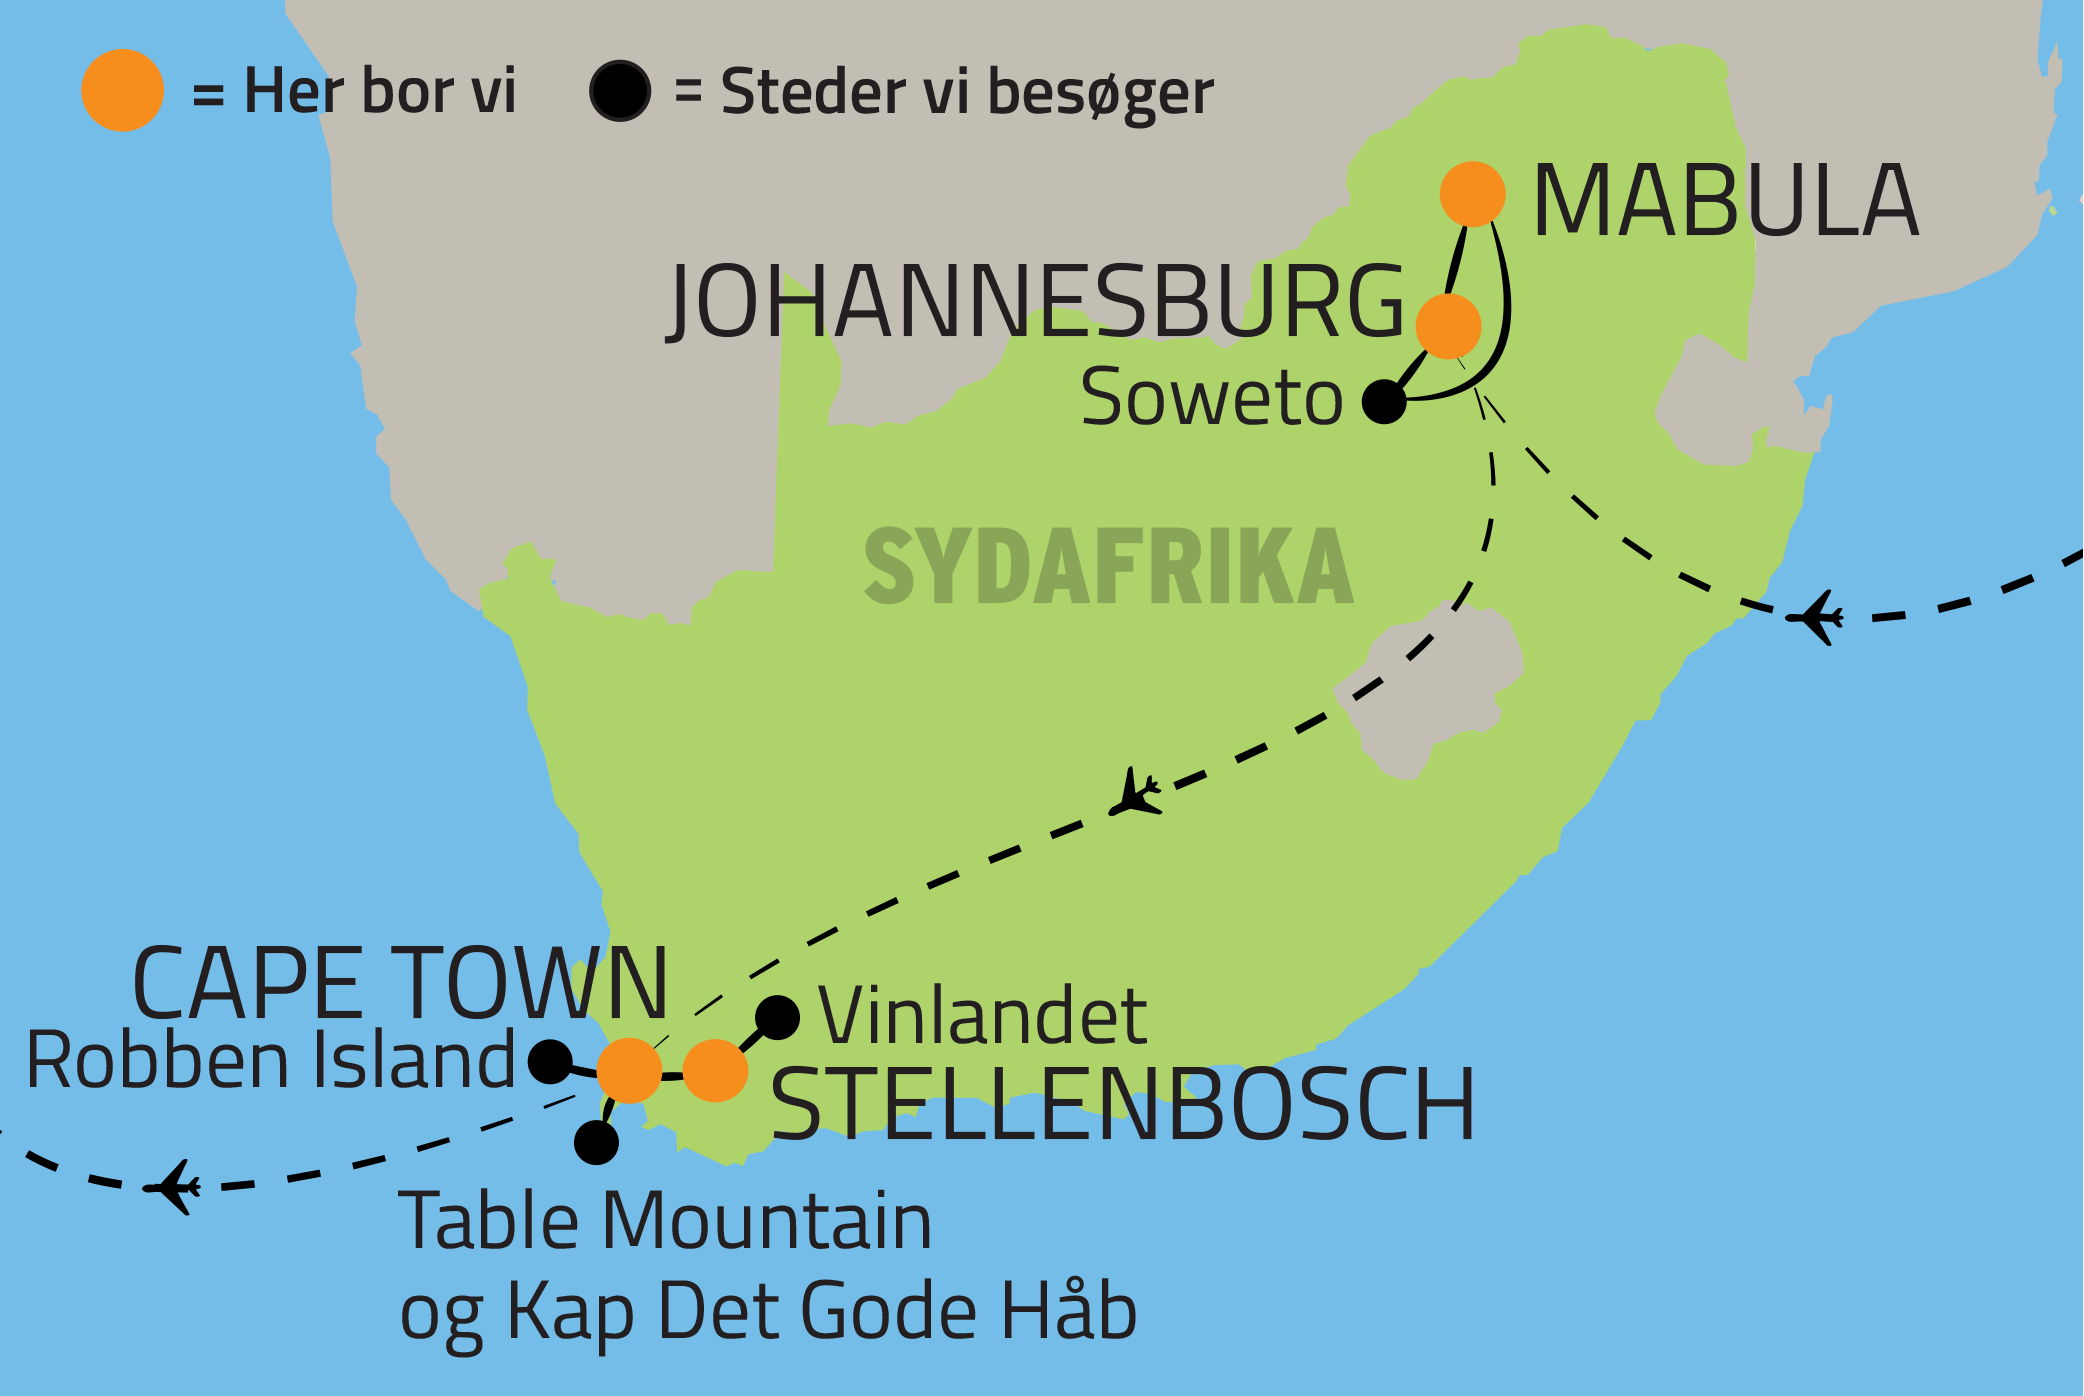 Først Og så videre sikring Rundrejse i Sydafrika - rejse med dansk rejseleder | Bestil her »